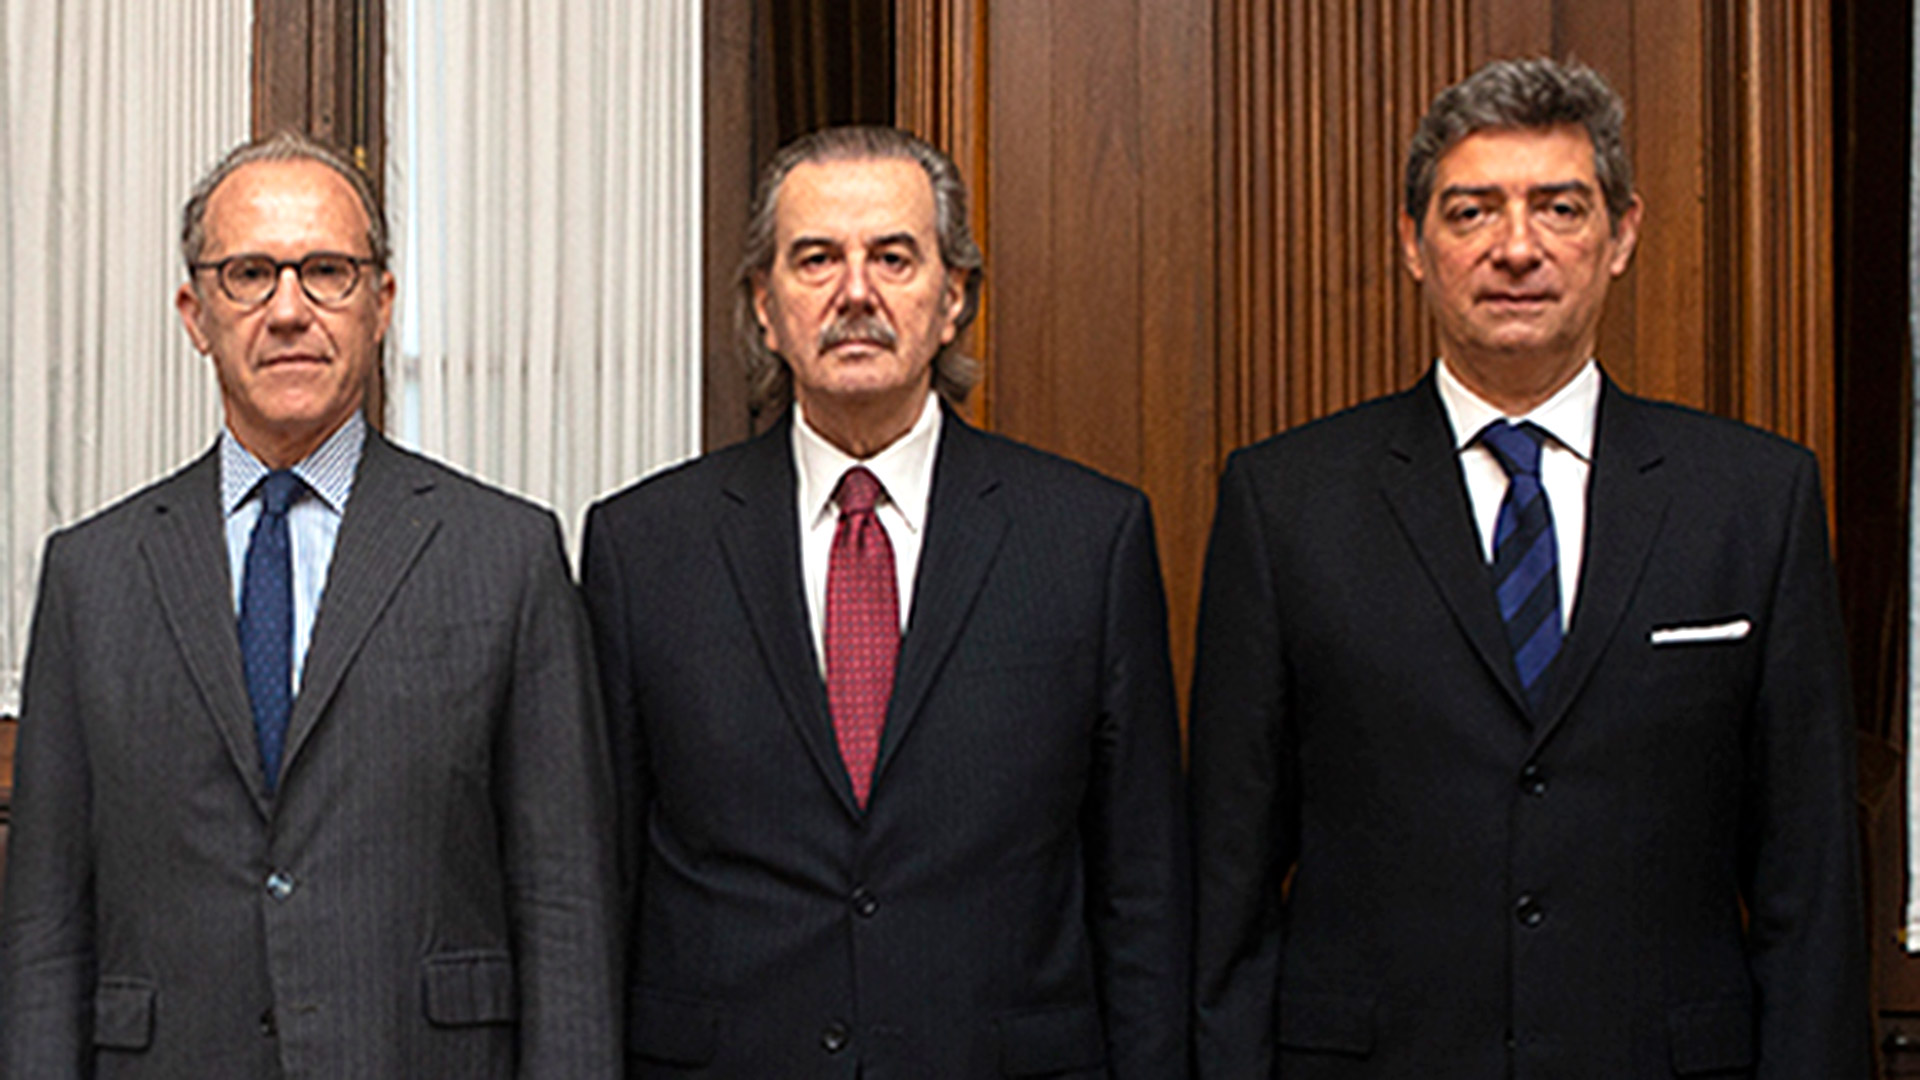 De izquierda a derecha, Carlos Rosenkrantz, Juan Carlos Maqueda y Horacio Rosatti.